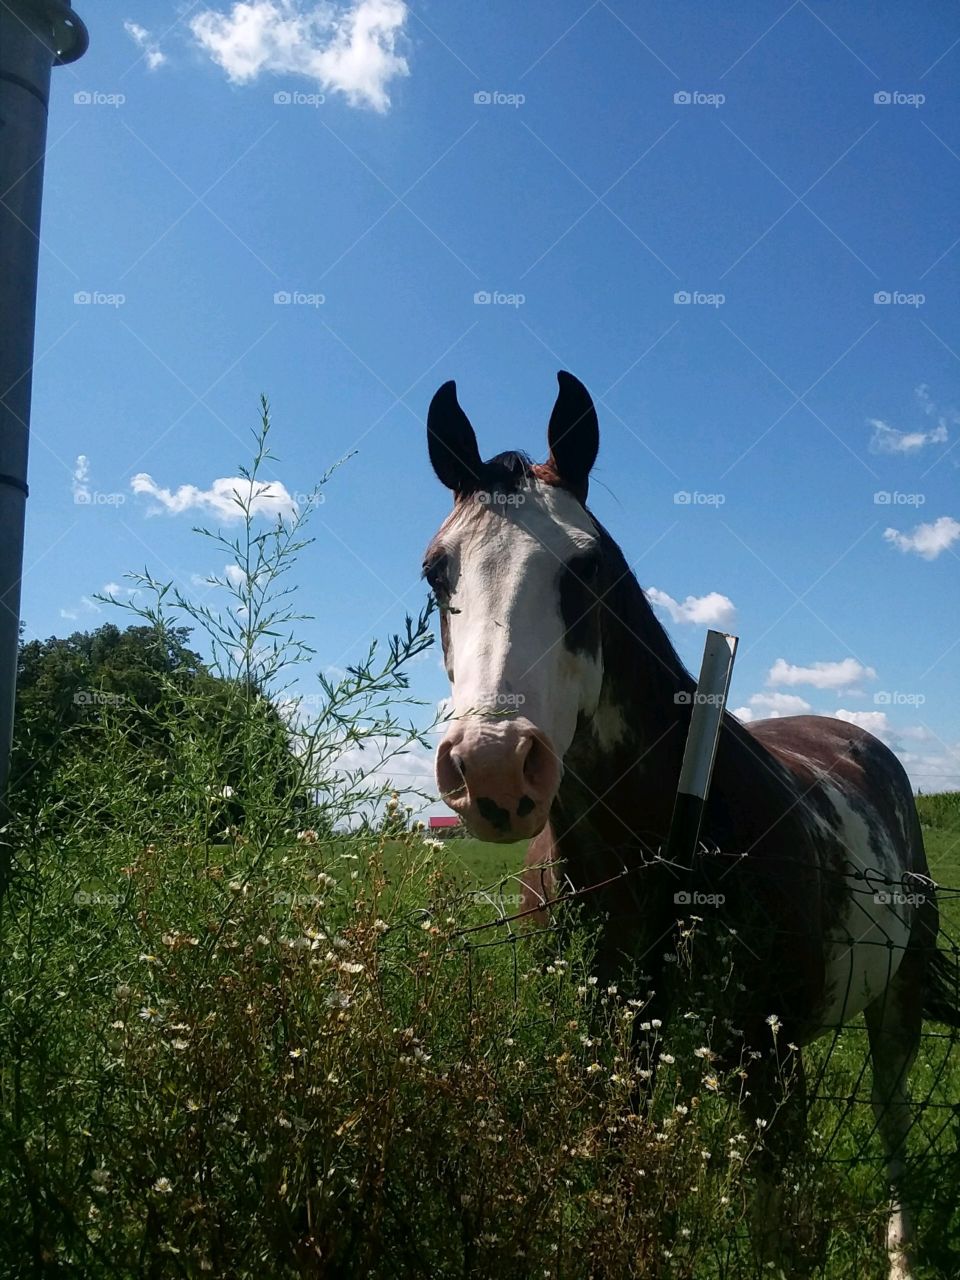 Horse in rural Ohio grazing 